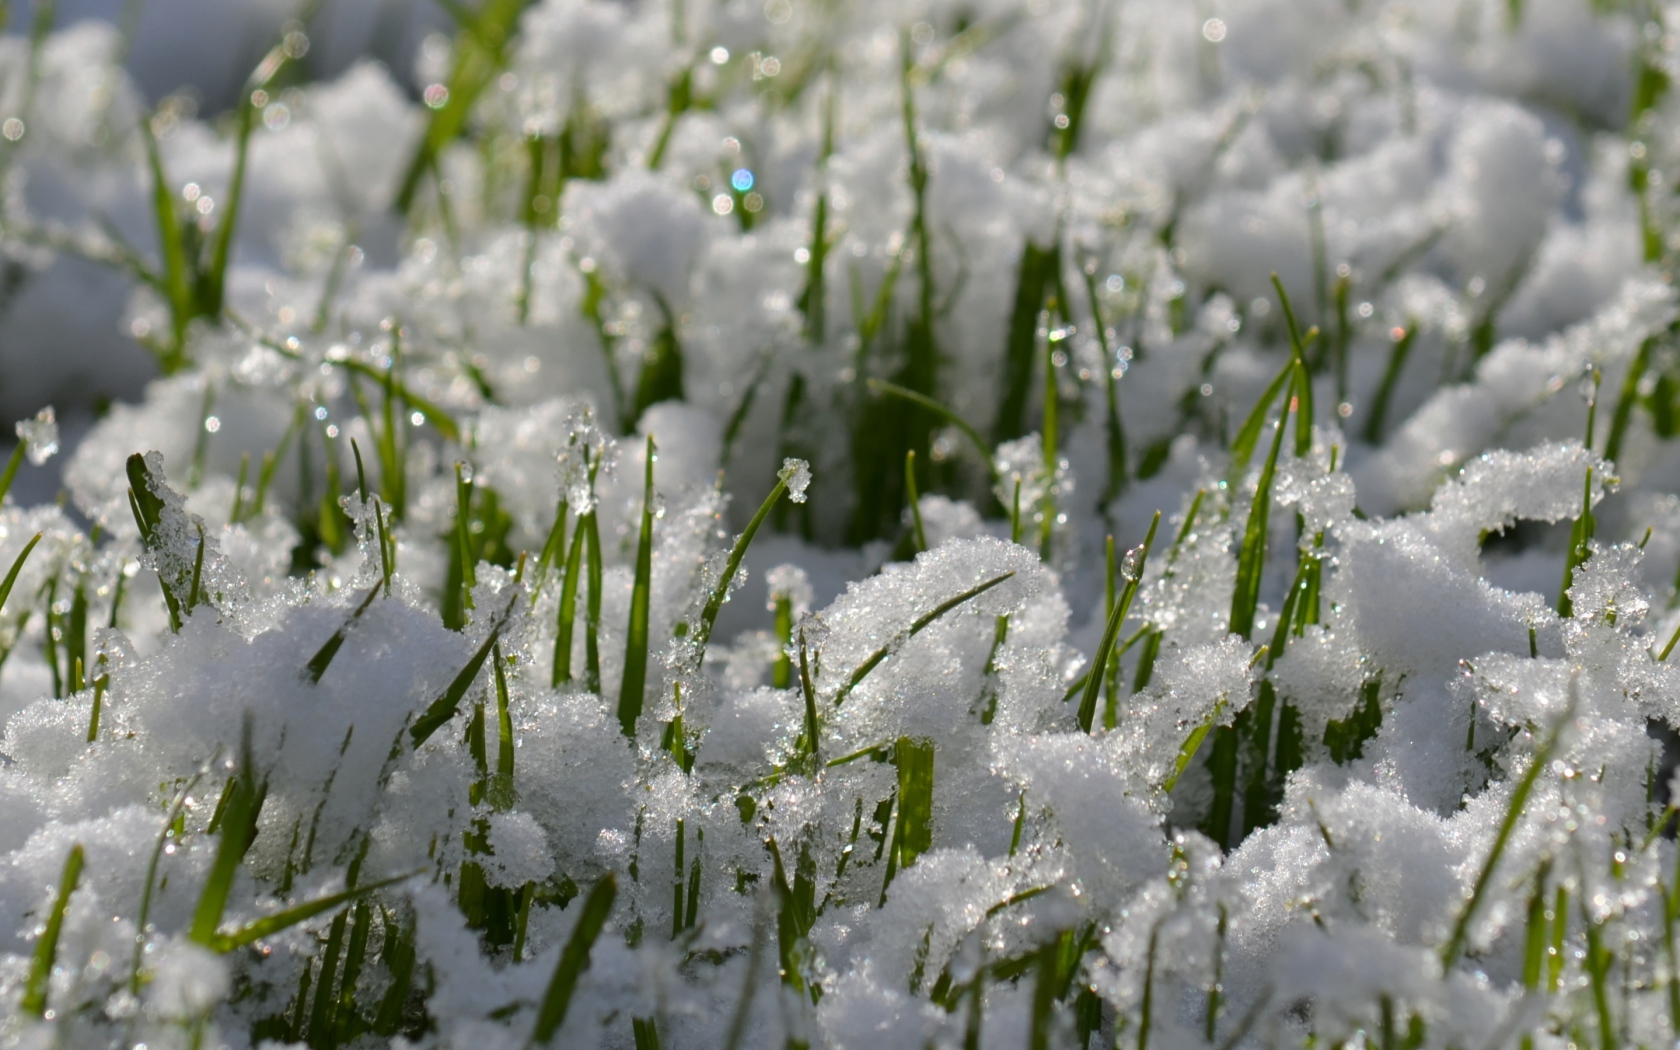 Зеленая трава проглядывает сквозь снег весной 